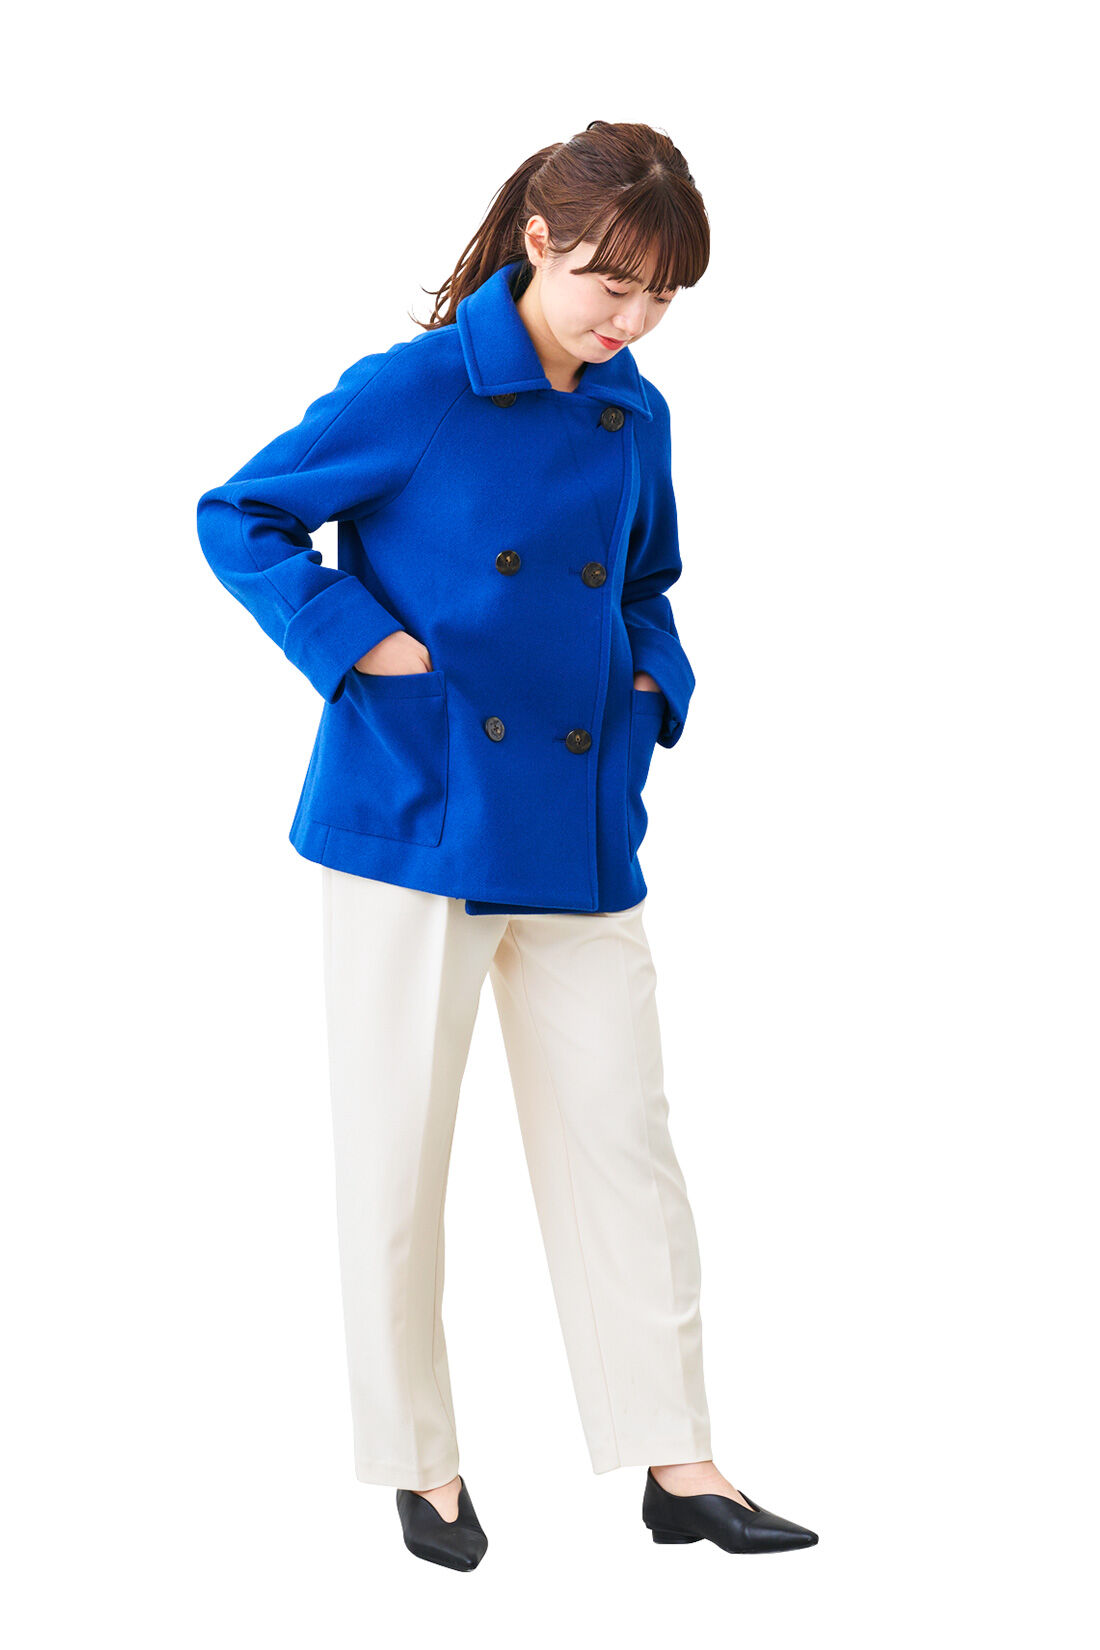 IEDIT[イディット] 着映えカラーのショート丈こなれPコート〈ロイヤルブルー〉｜レディースファッション・洋服の通販｜IEDIT